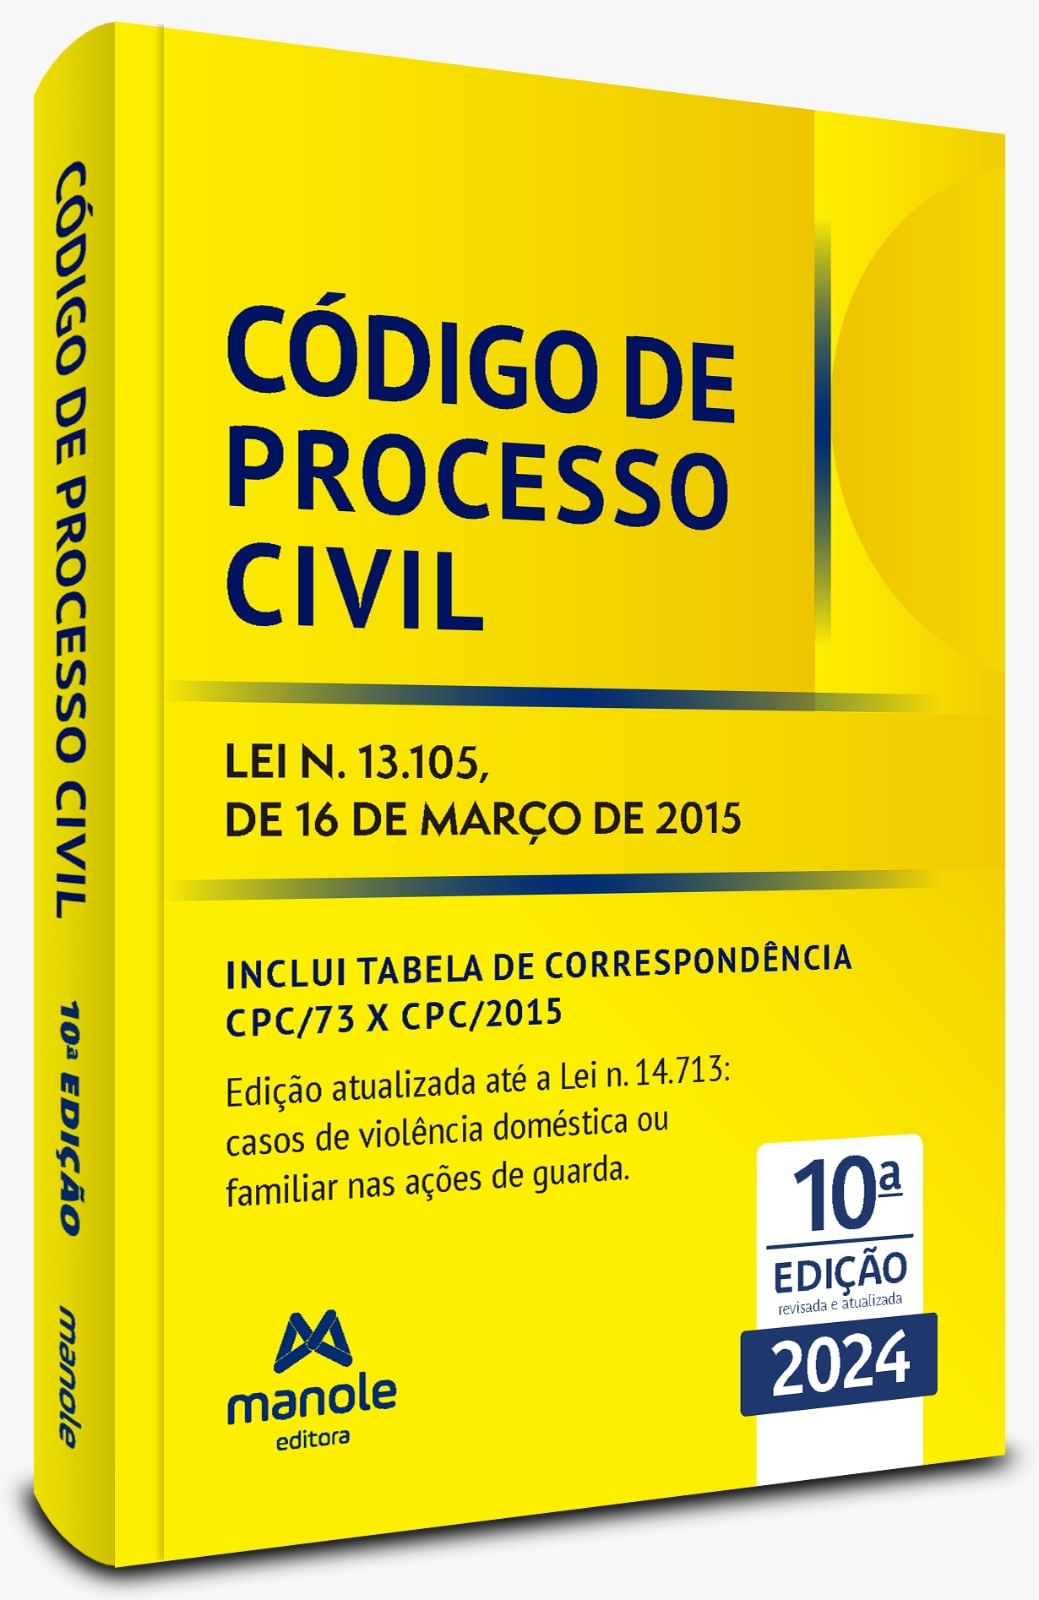 codigo-de-processo-civil-10-edicao-lei-n-13105-de-16-de-marco-de-2015